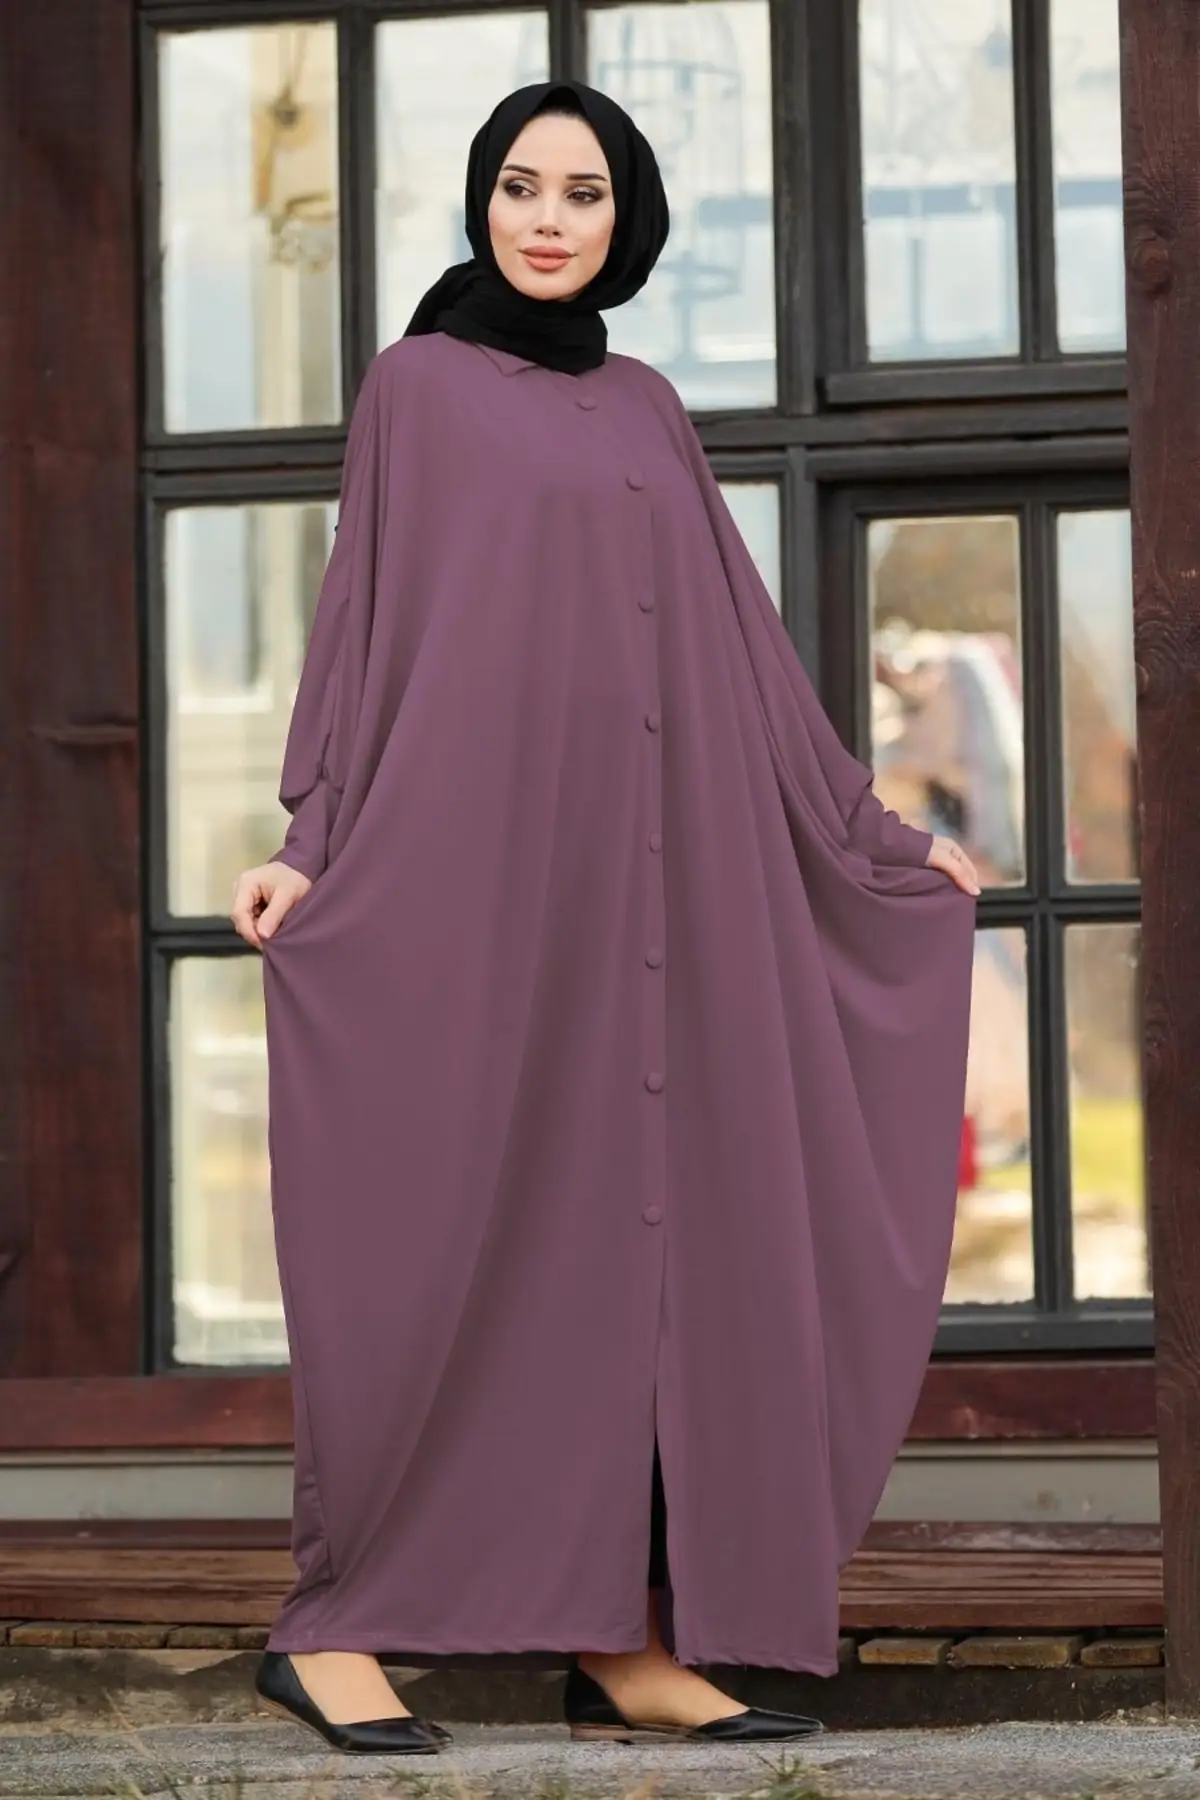 Women's Abaya Front Button Bat Sleeve Long Sandy Stylish Sweatproof New Fashion Good Quality 2022 Season